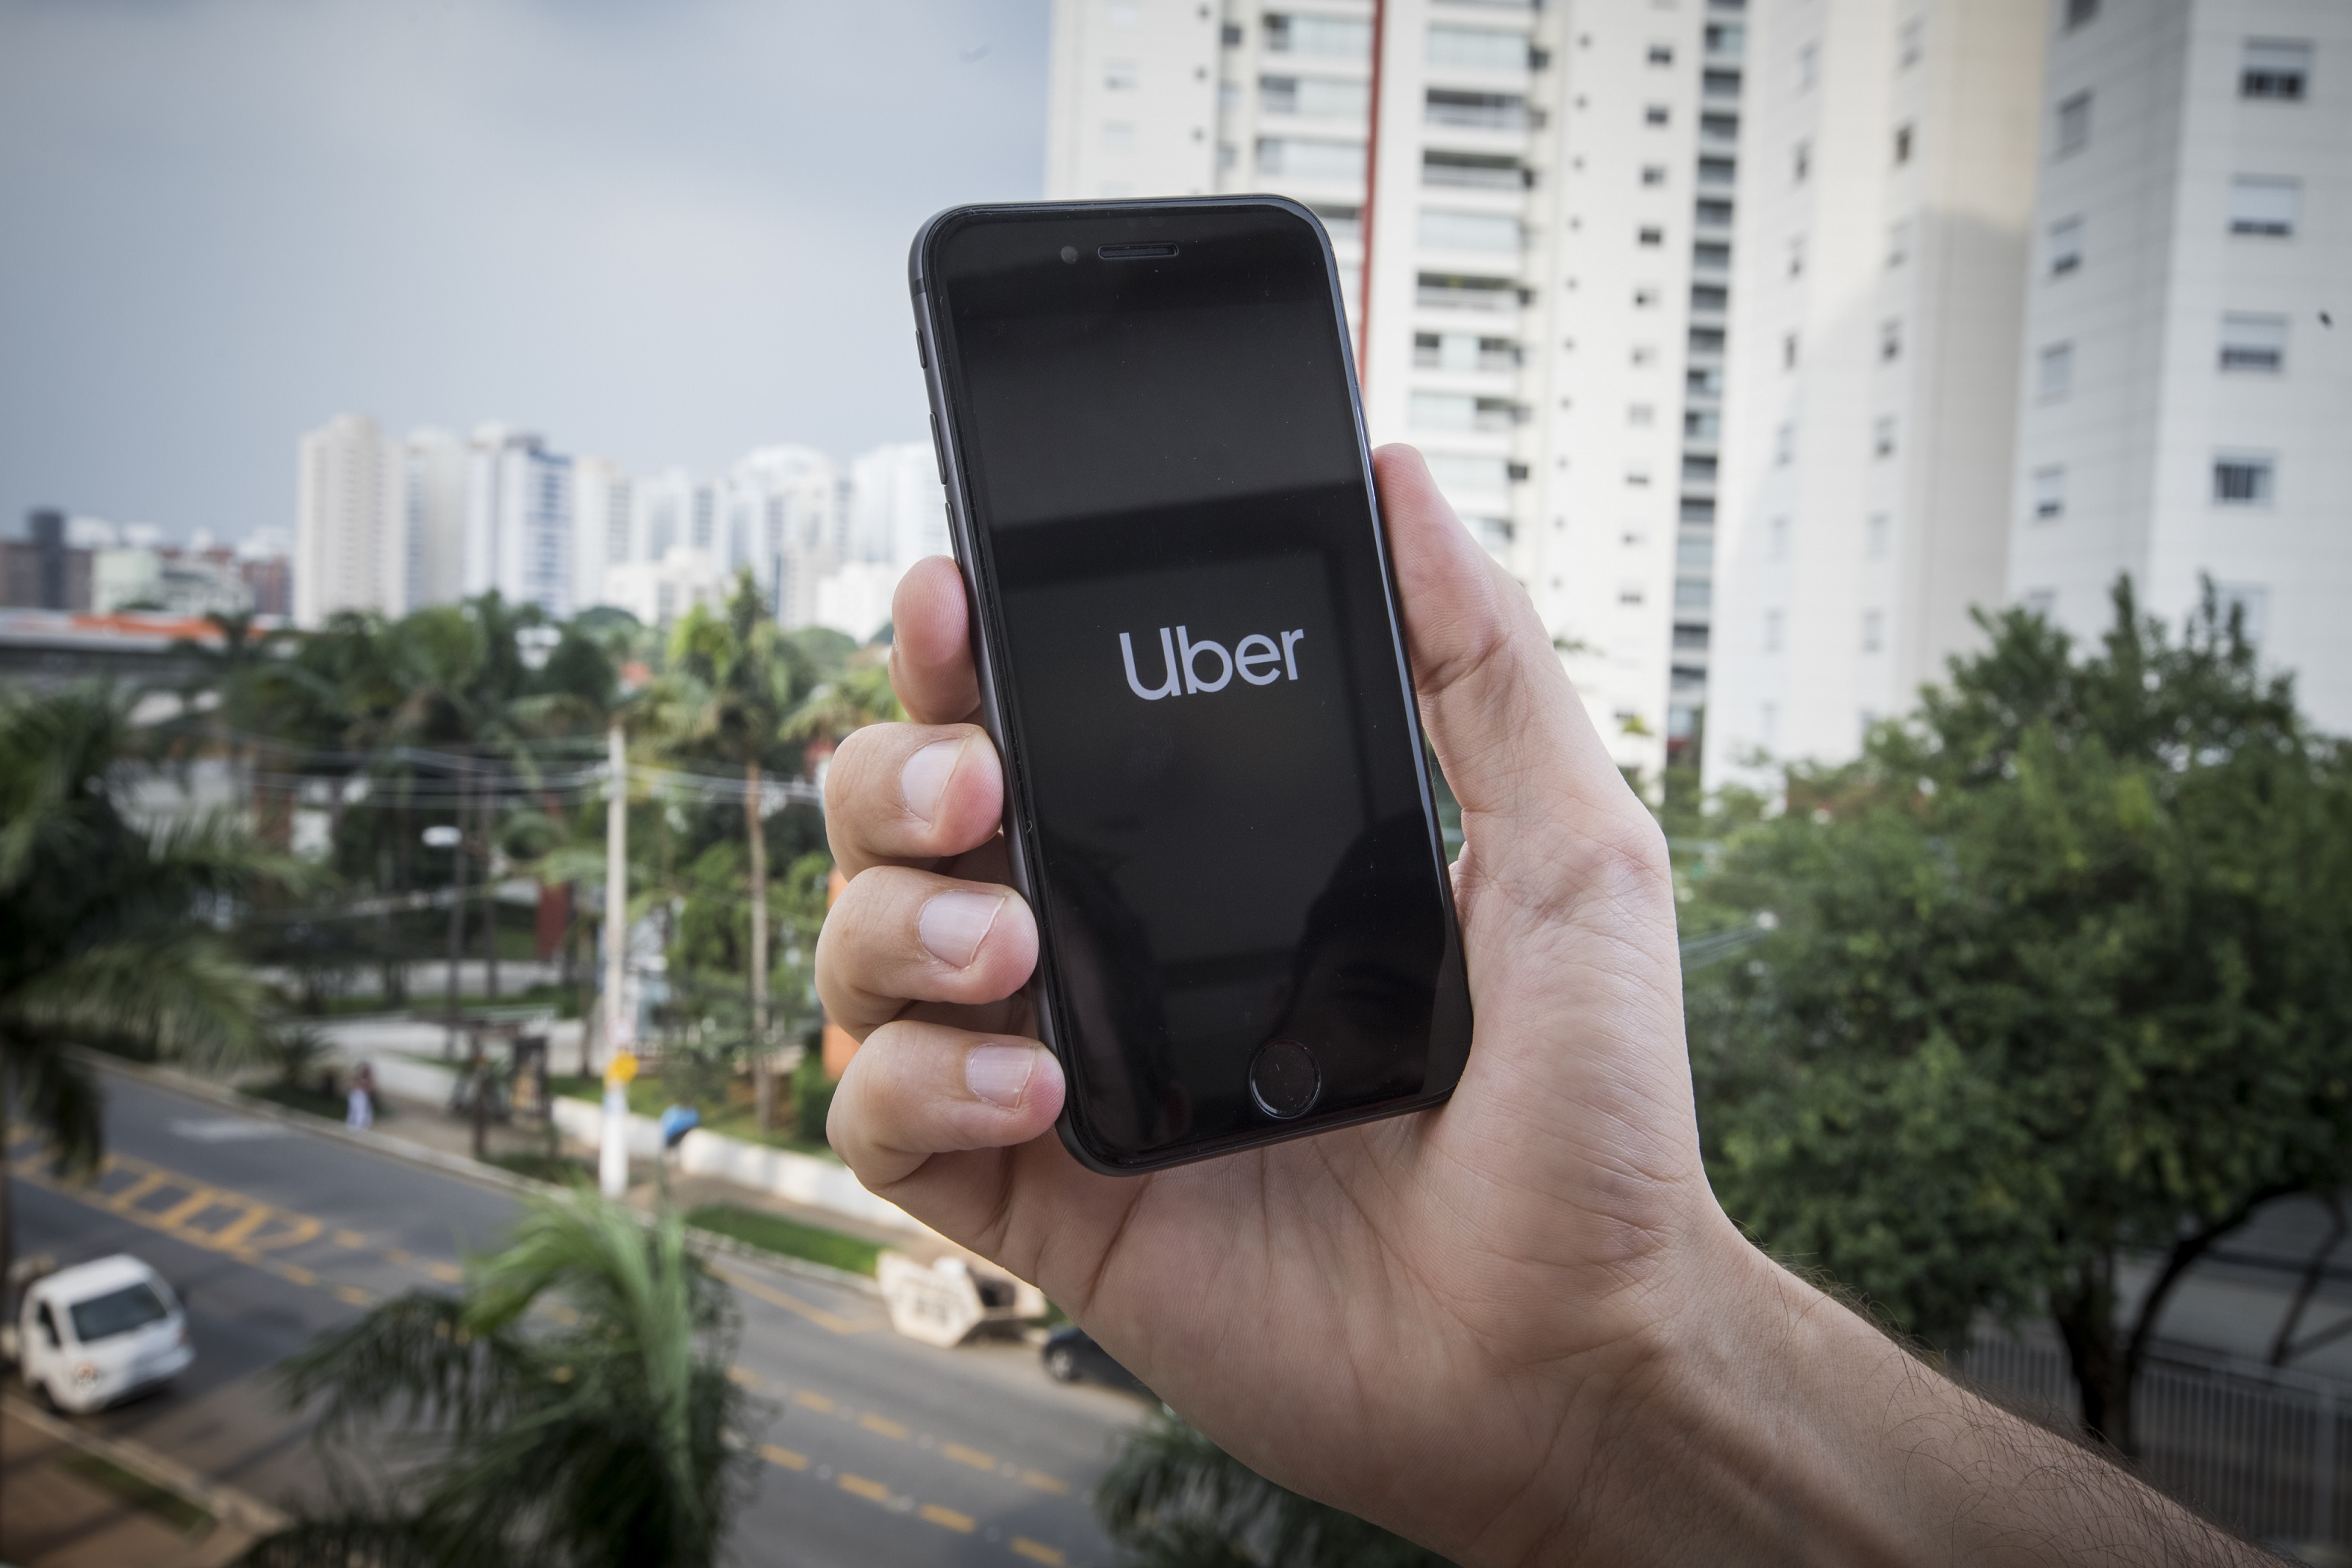 Segunda vuelta electoral: Uber ofrecerá 50% de descuento en viajes a locales de votación el domingo 6 de junio